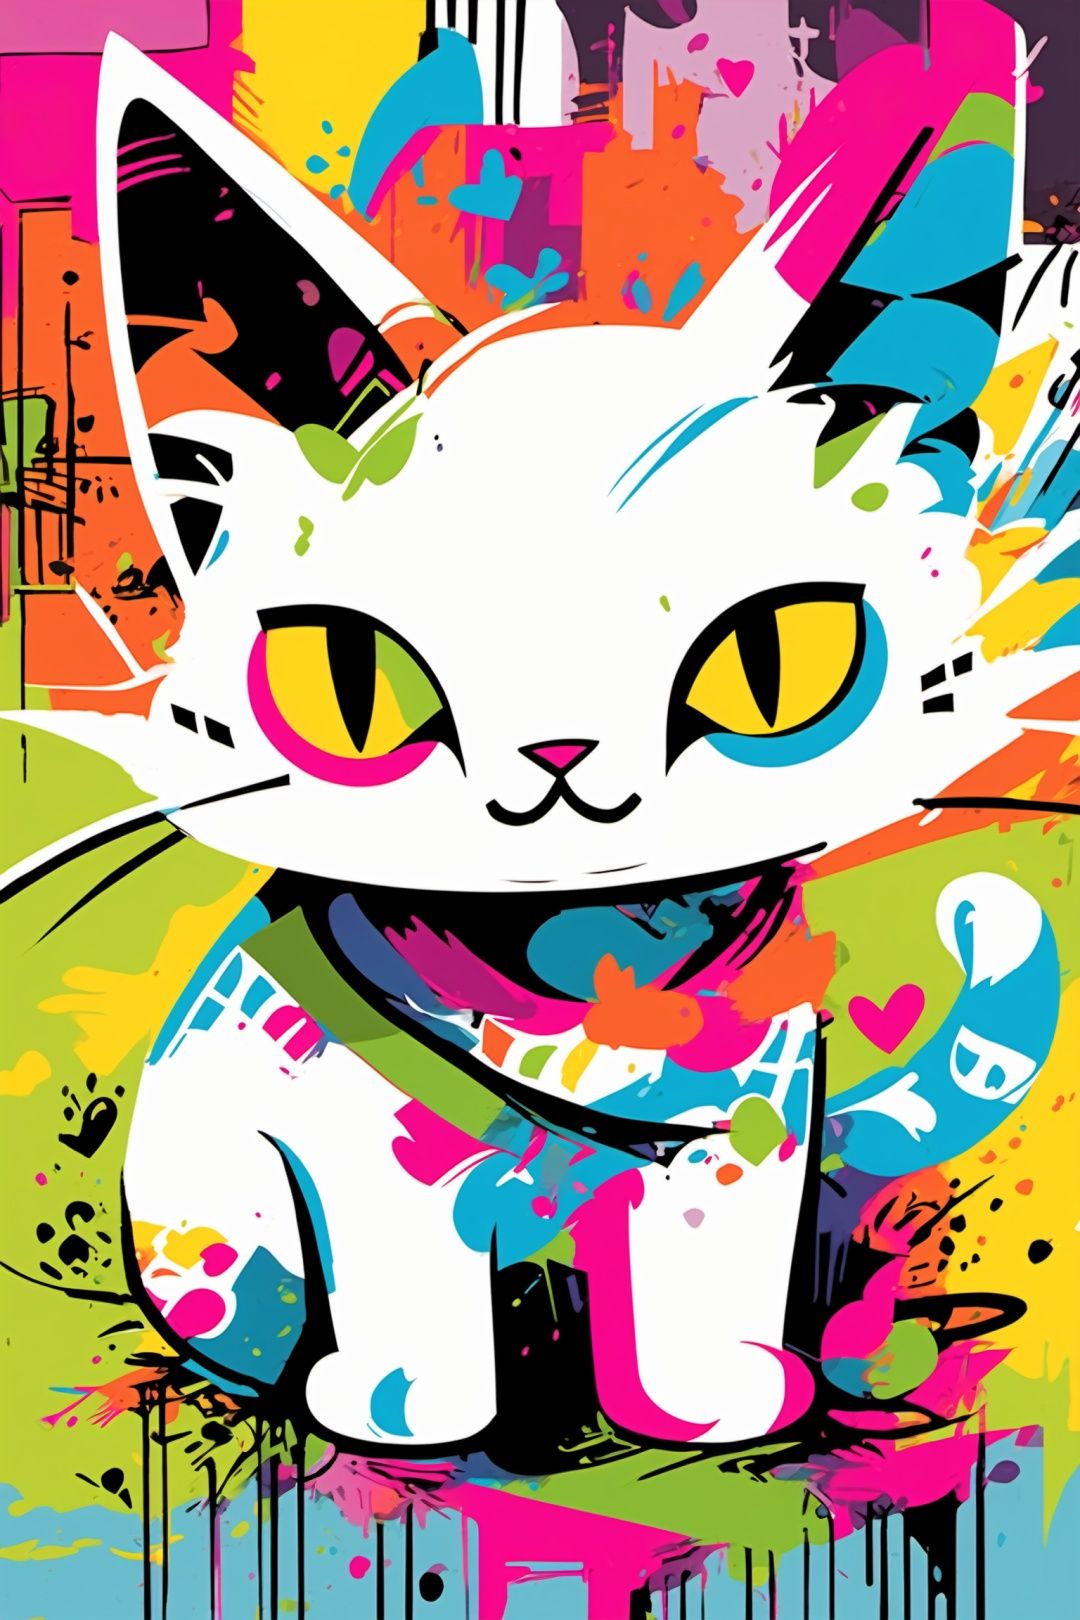 A white cat, graffiti, colorful